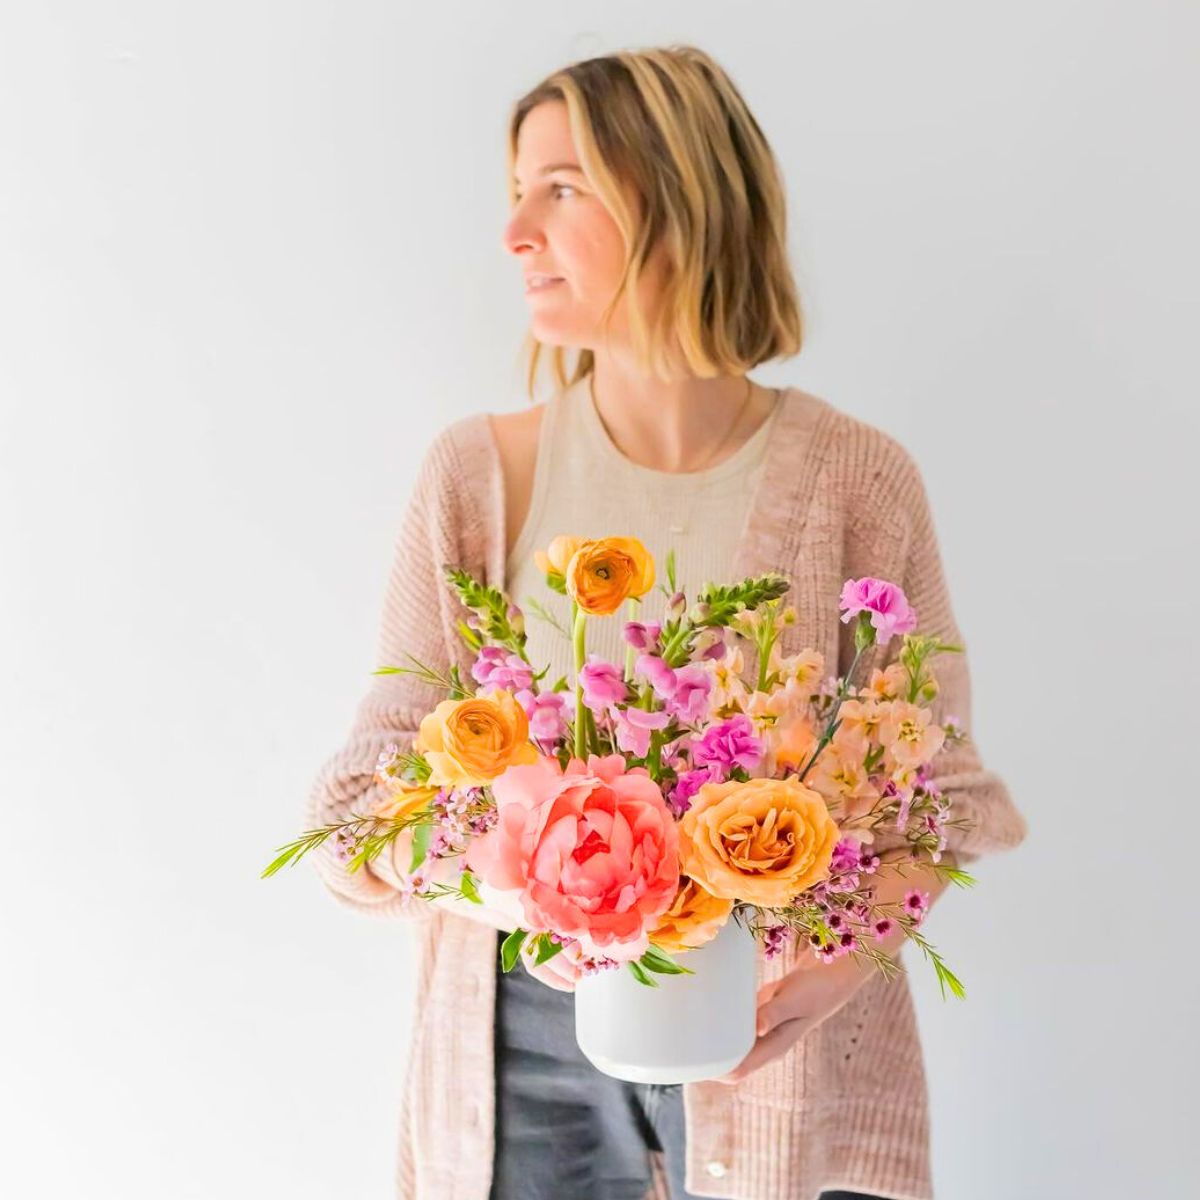 Natalie Gill floral designer